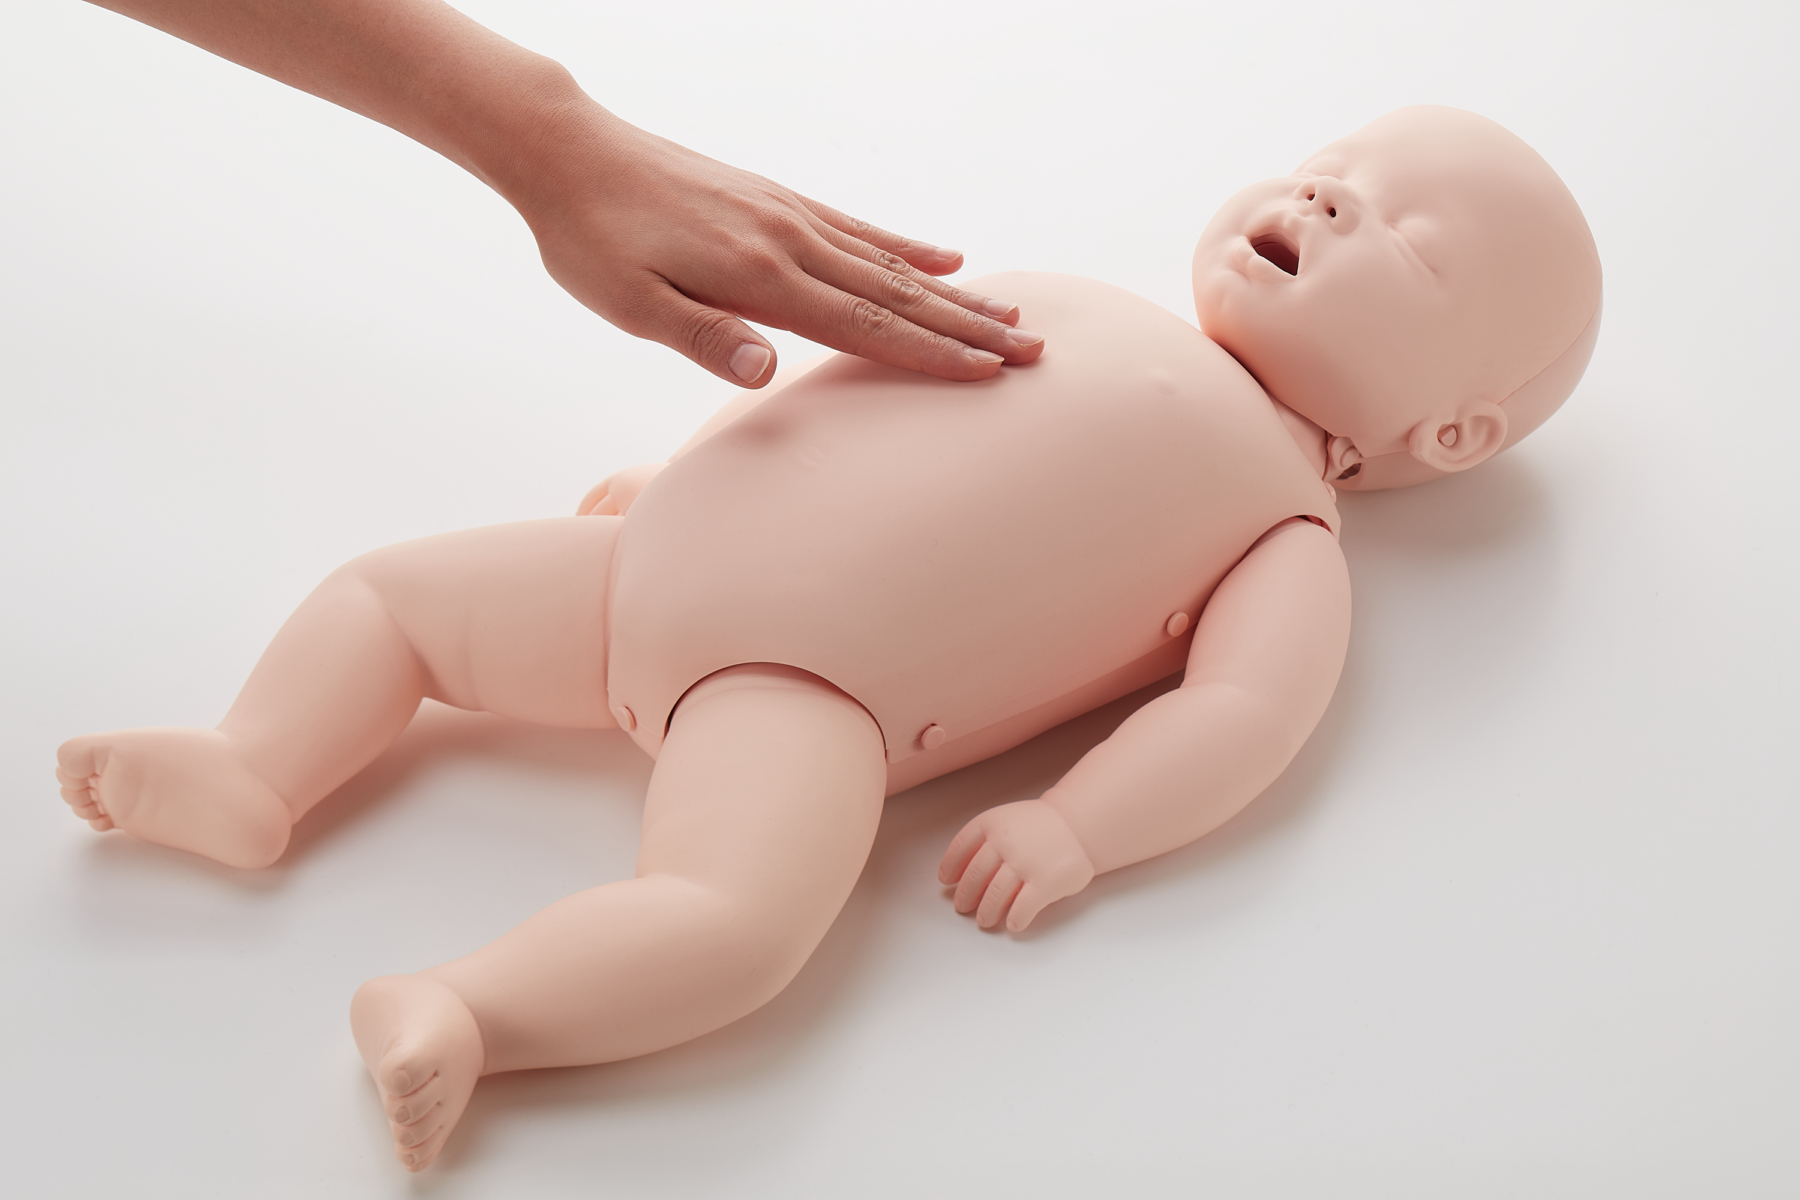 Brayden Baby illuminating CPR manikin showing hand placement on chest